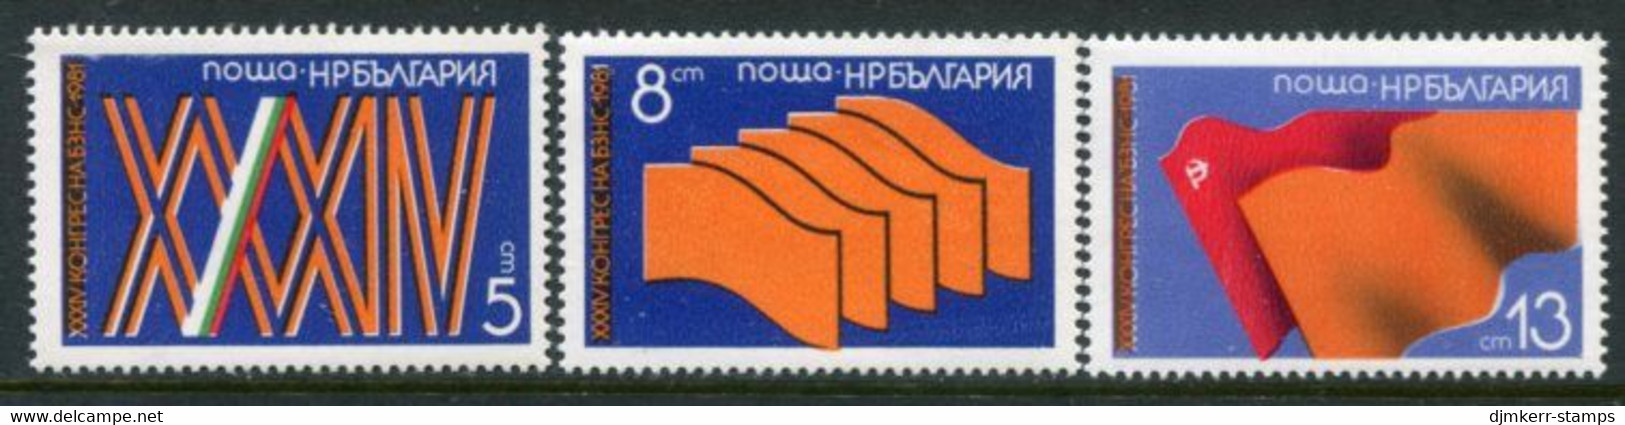 BULGARIA 1981 Peasants' Union Congress  MNH / **.  Michel 2993-95 - Nuovi